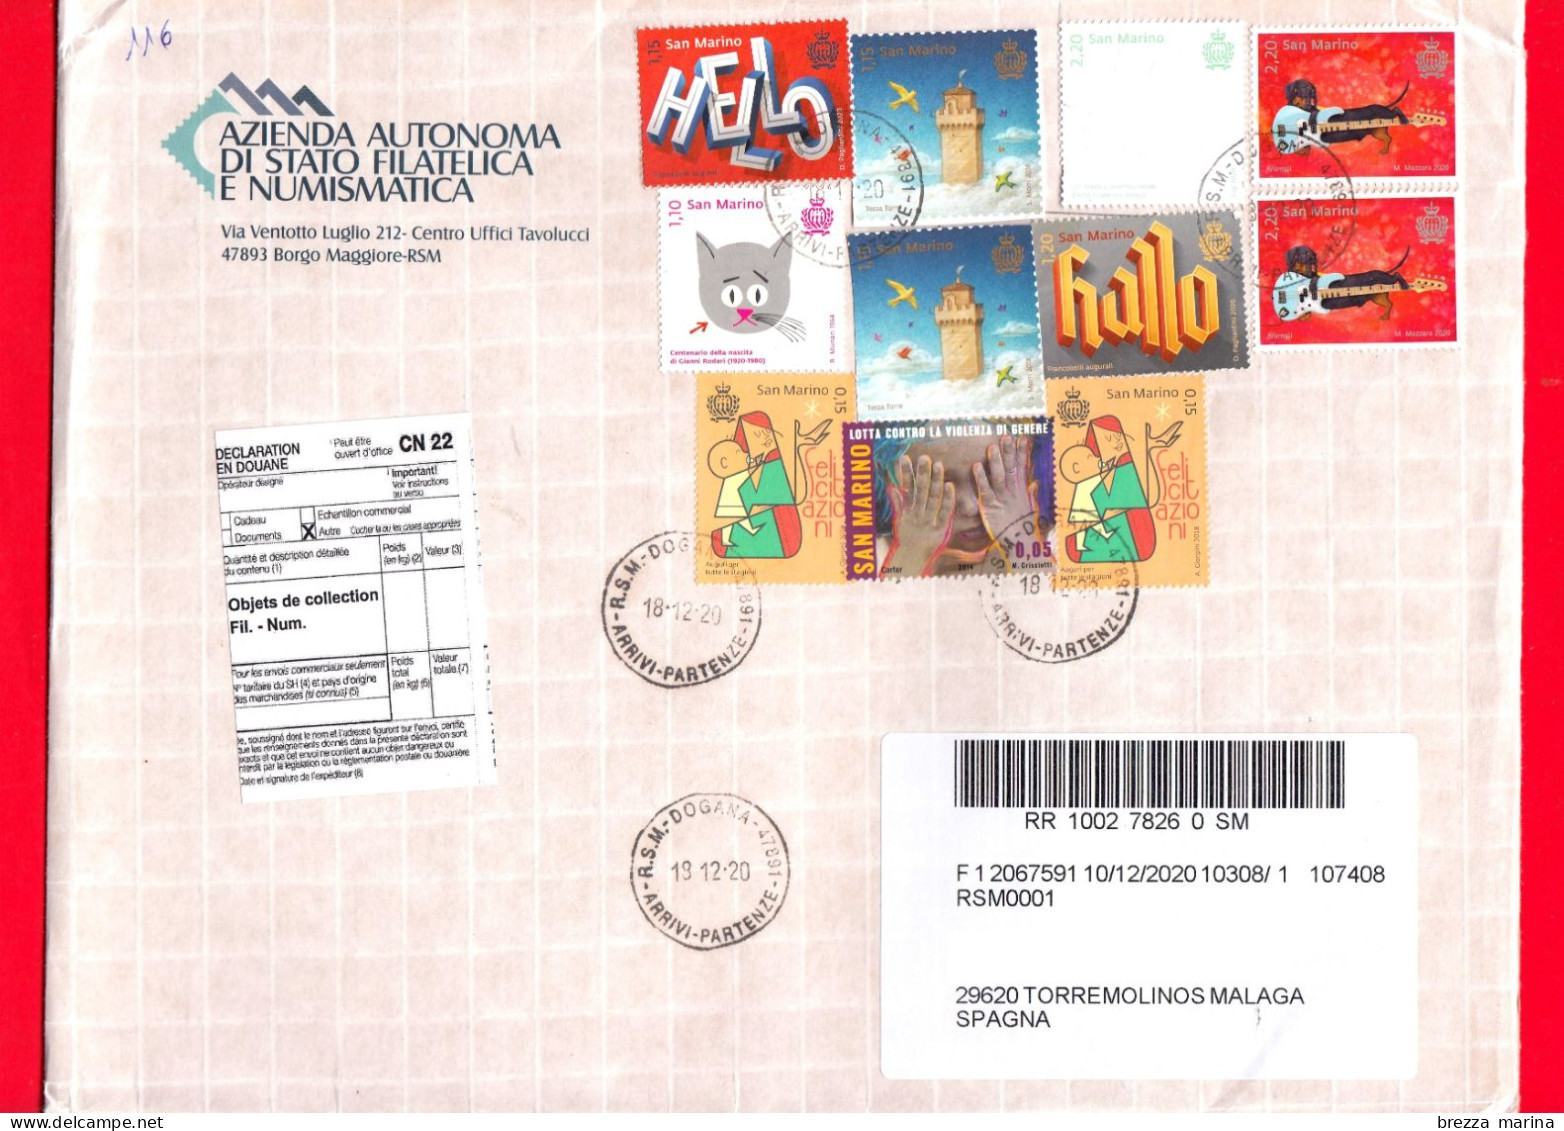 SAN MARINO - Storia Postale - Busta Del 2020 - ( 2020 - Cane, 2.20 - Stella Alpina, 2.20 - Hallo. 1.20 ... ) - Covers & Documents